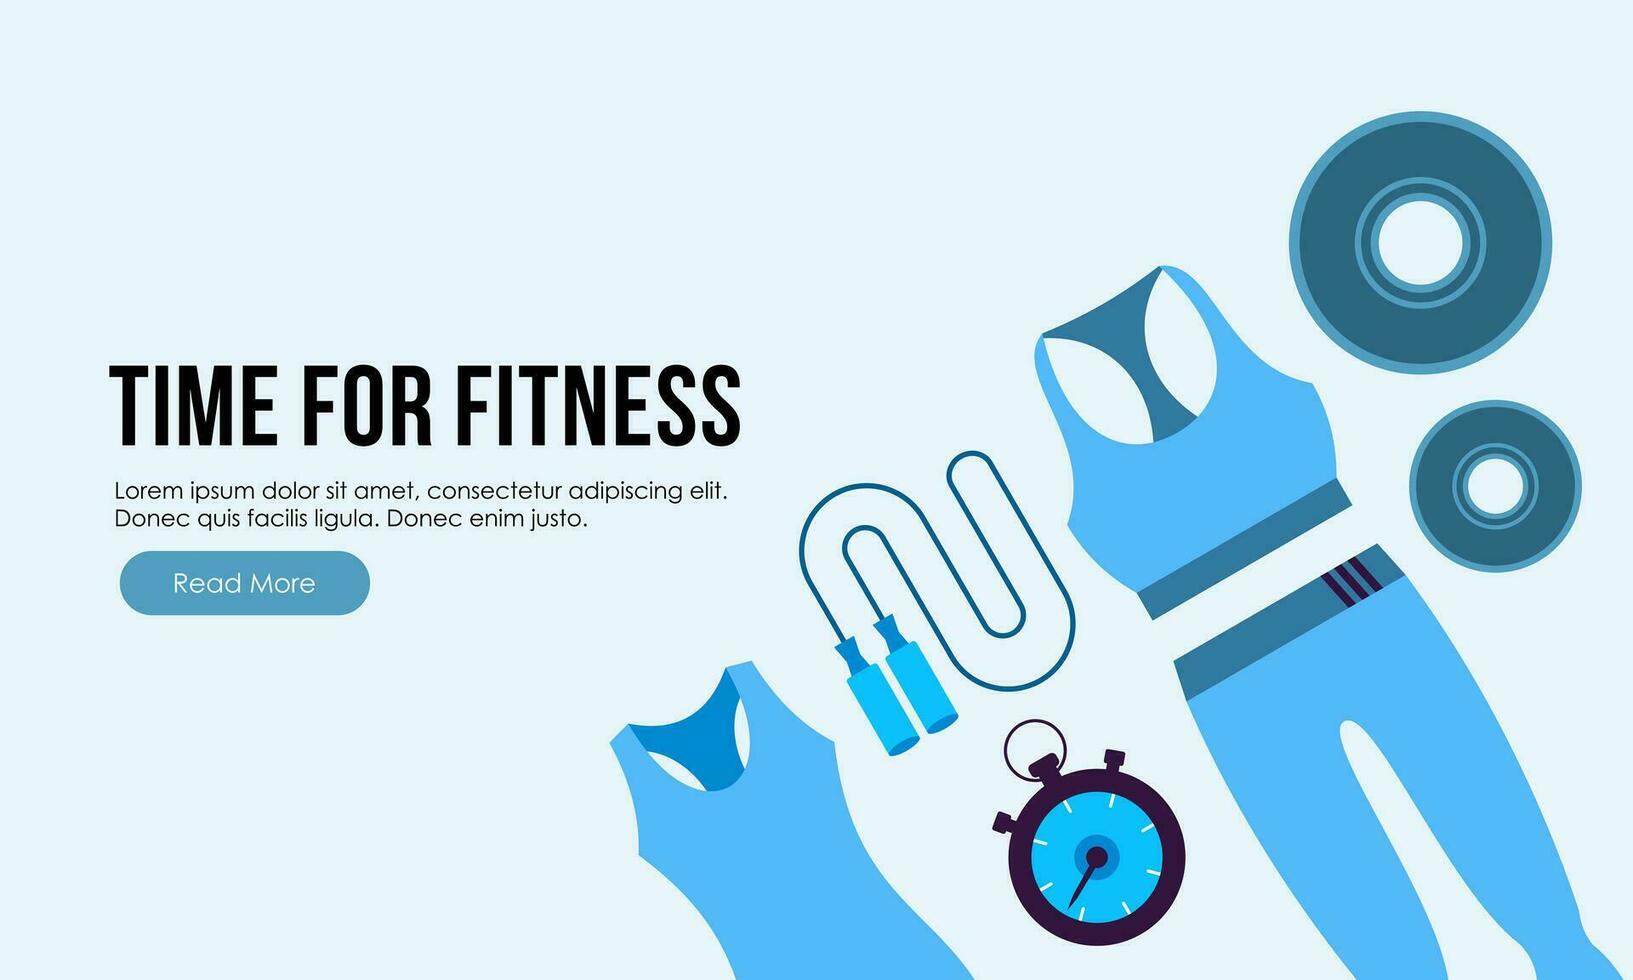 fitness attrezzatura logo piatto concetto vettore